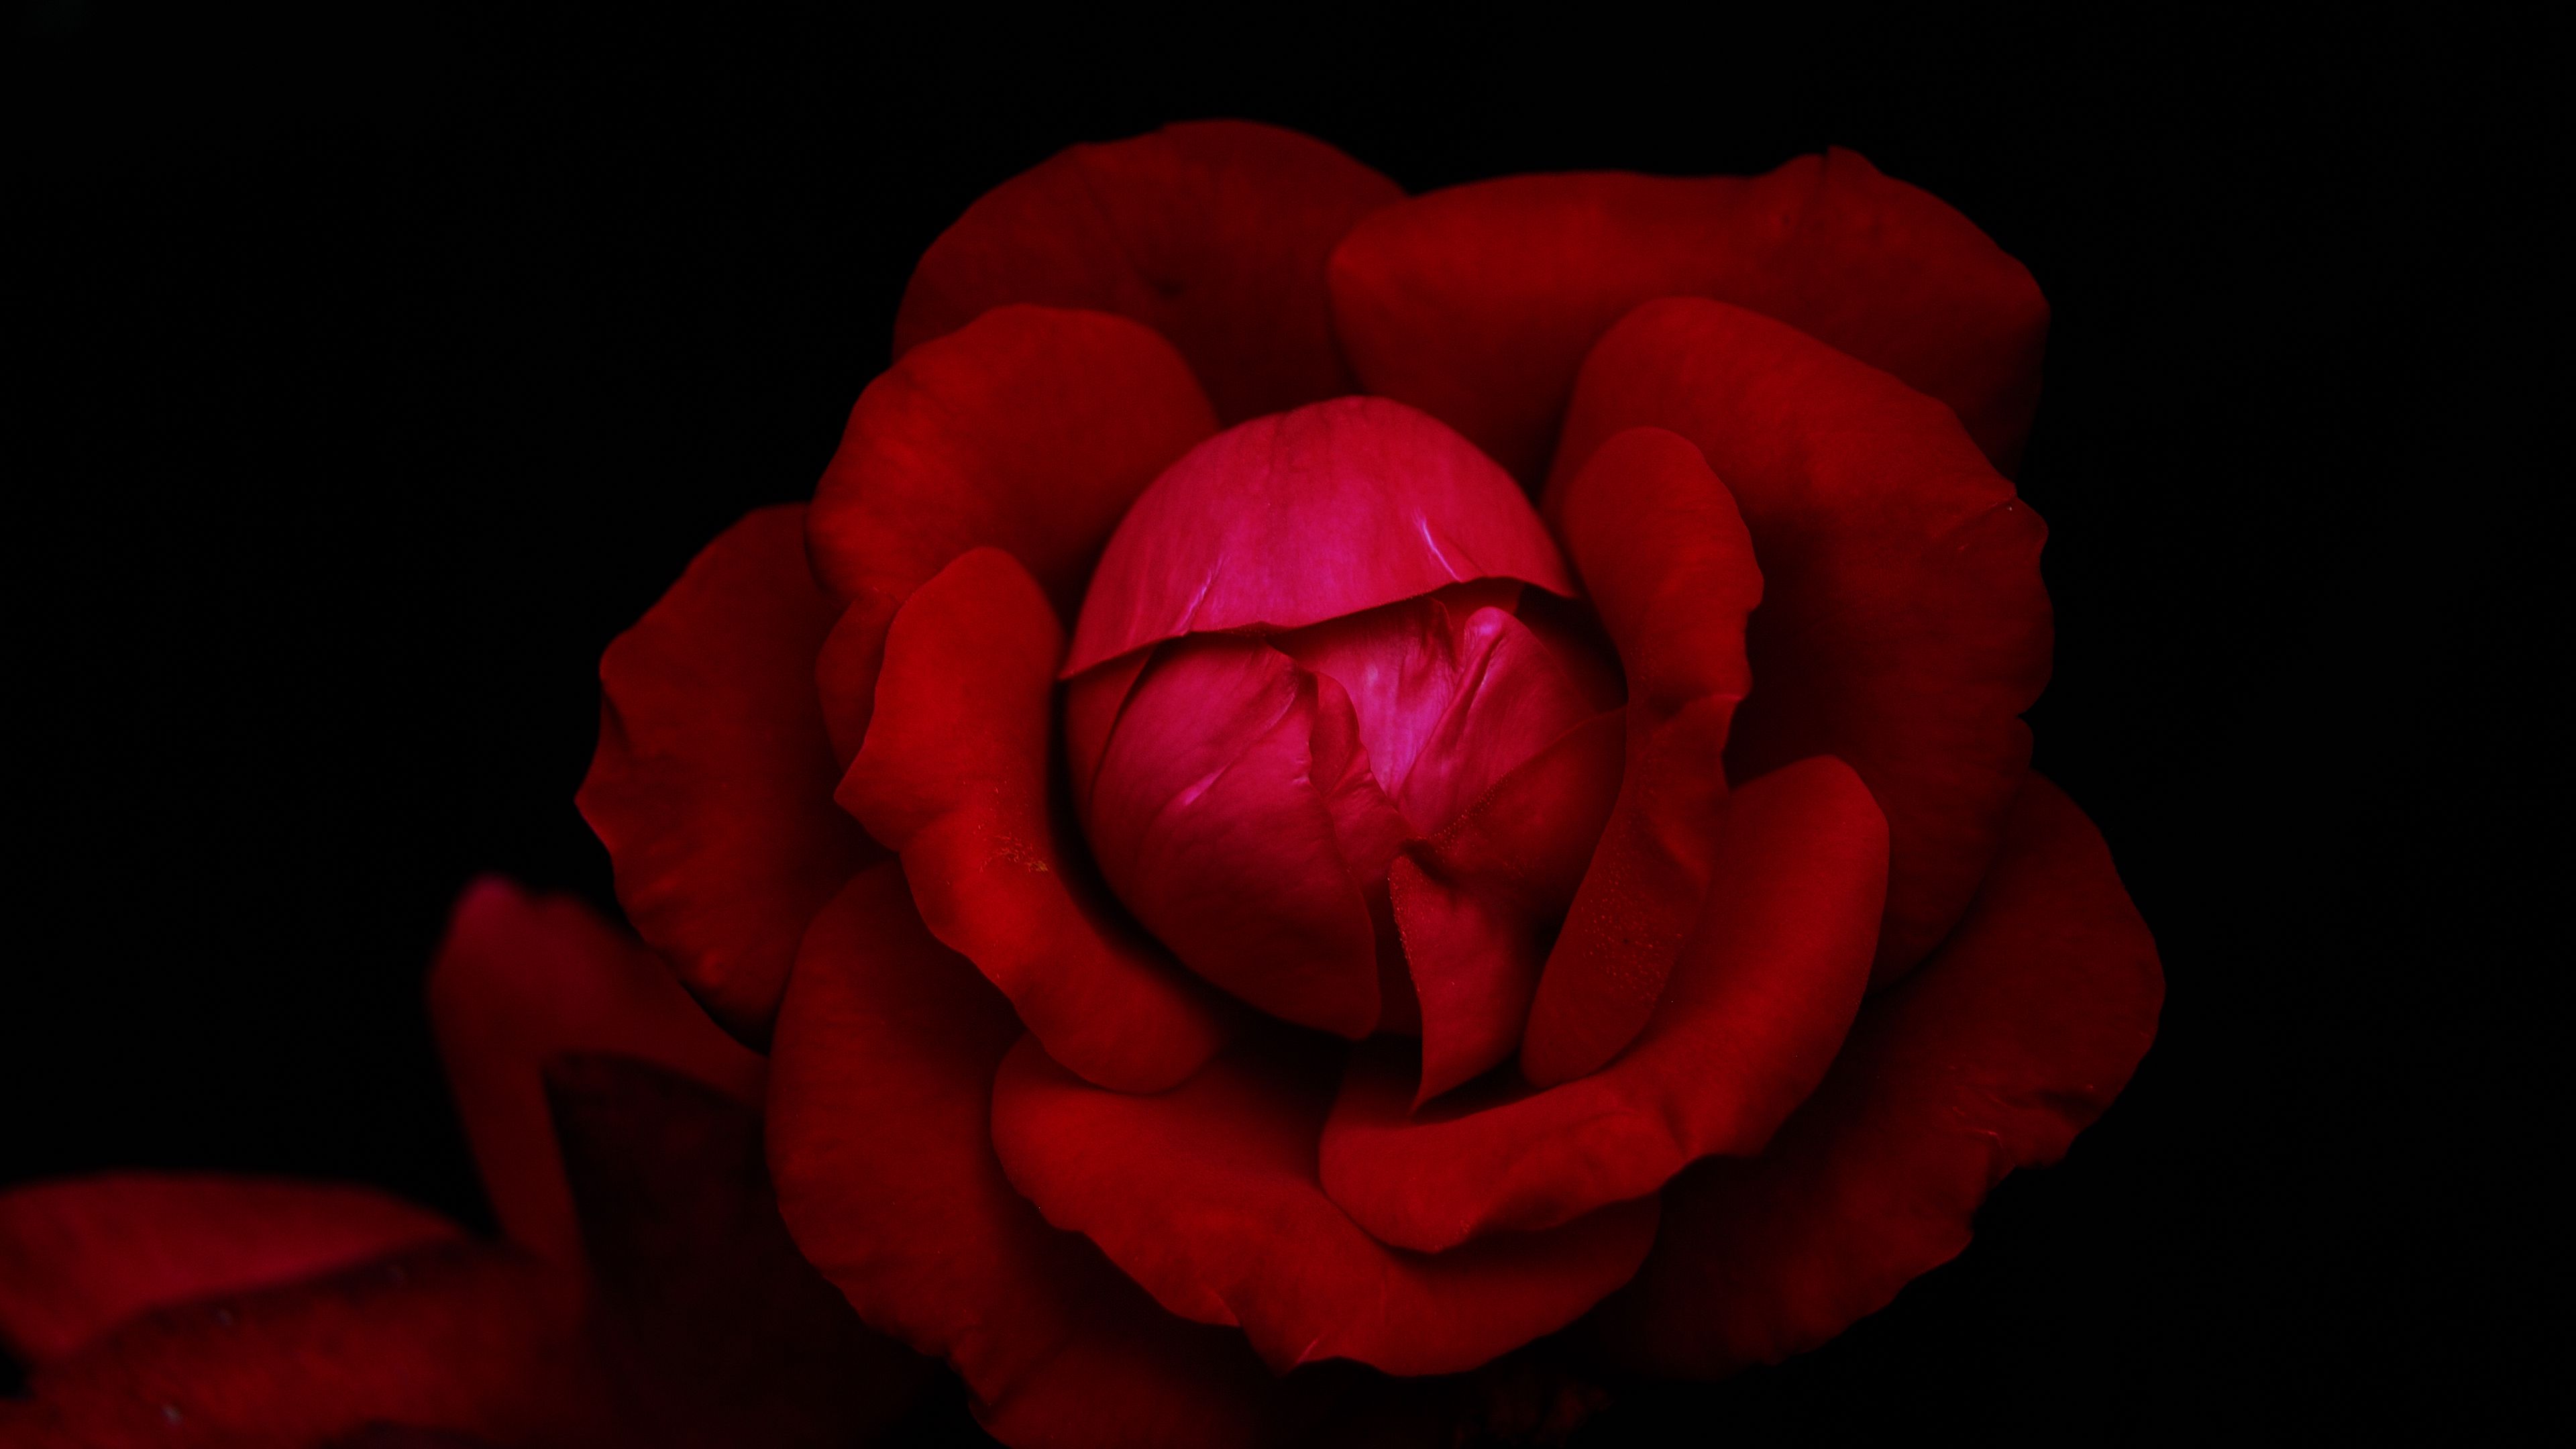 Những bông hoa hồng đỏ rực rỡ sẽ khiến trái tim bạn rung động và rực cháy. Hãy tận hưởng vẻ đẹp, mùi thơm và tình cảm tinh túy của những bông hoa này.